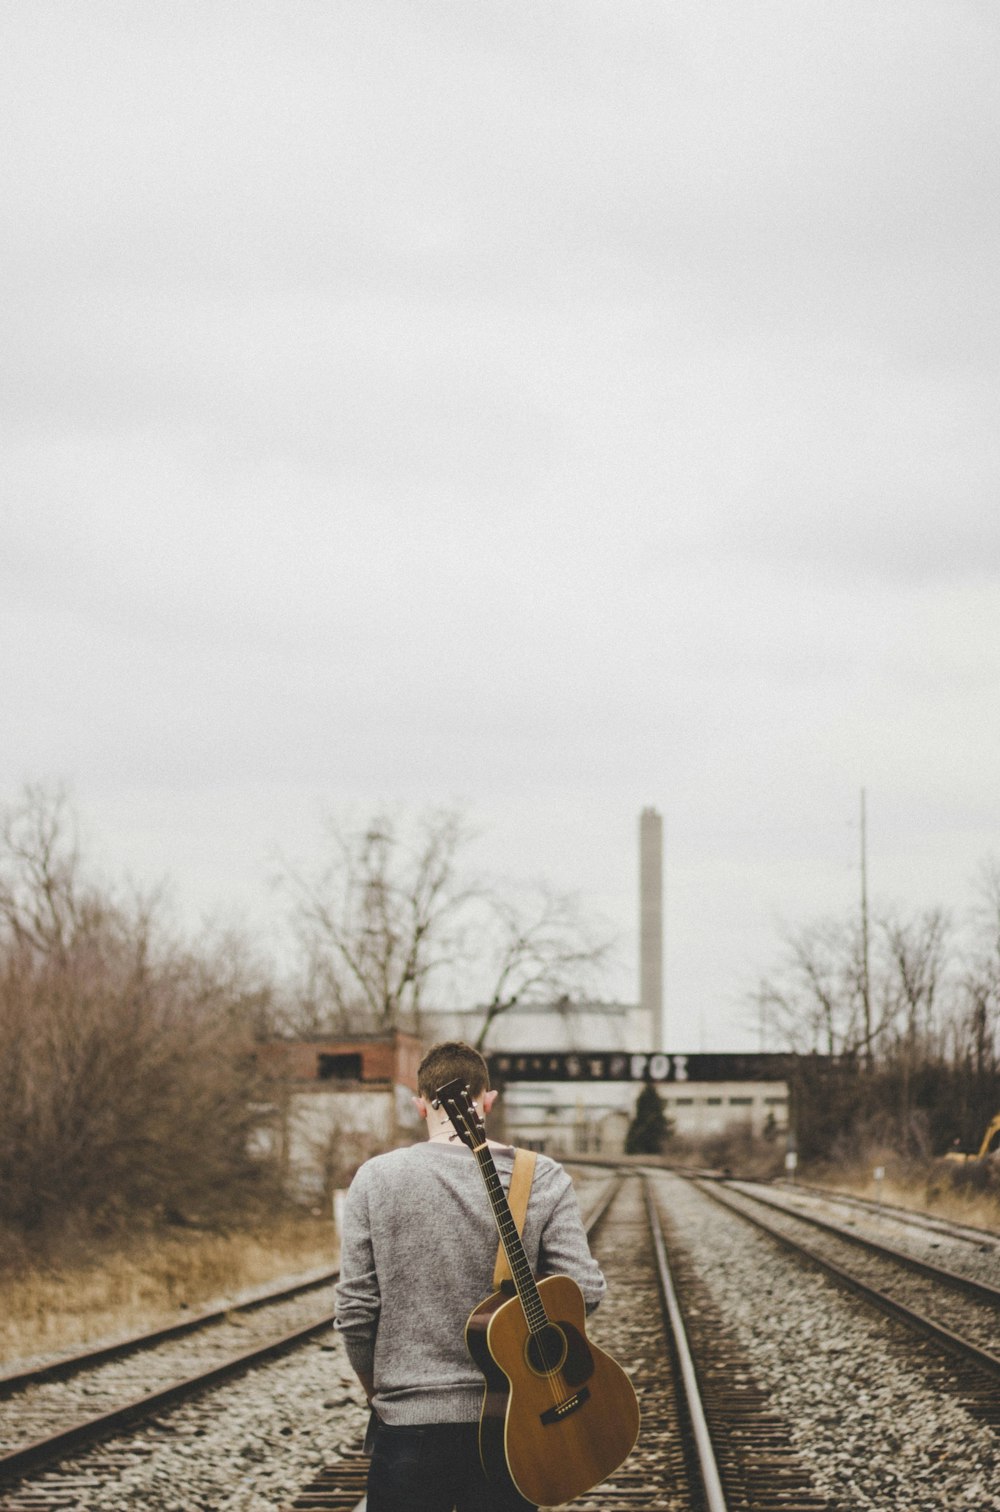 기타를 들고 기차 레일을 걷는 남자